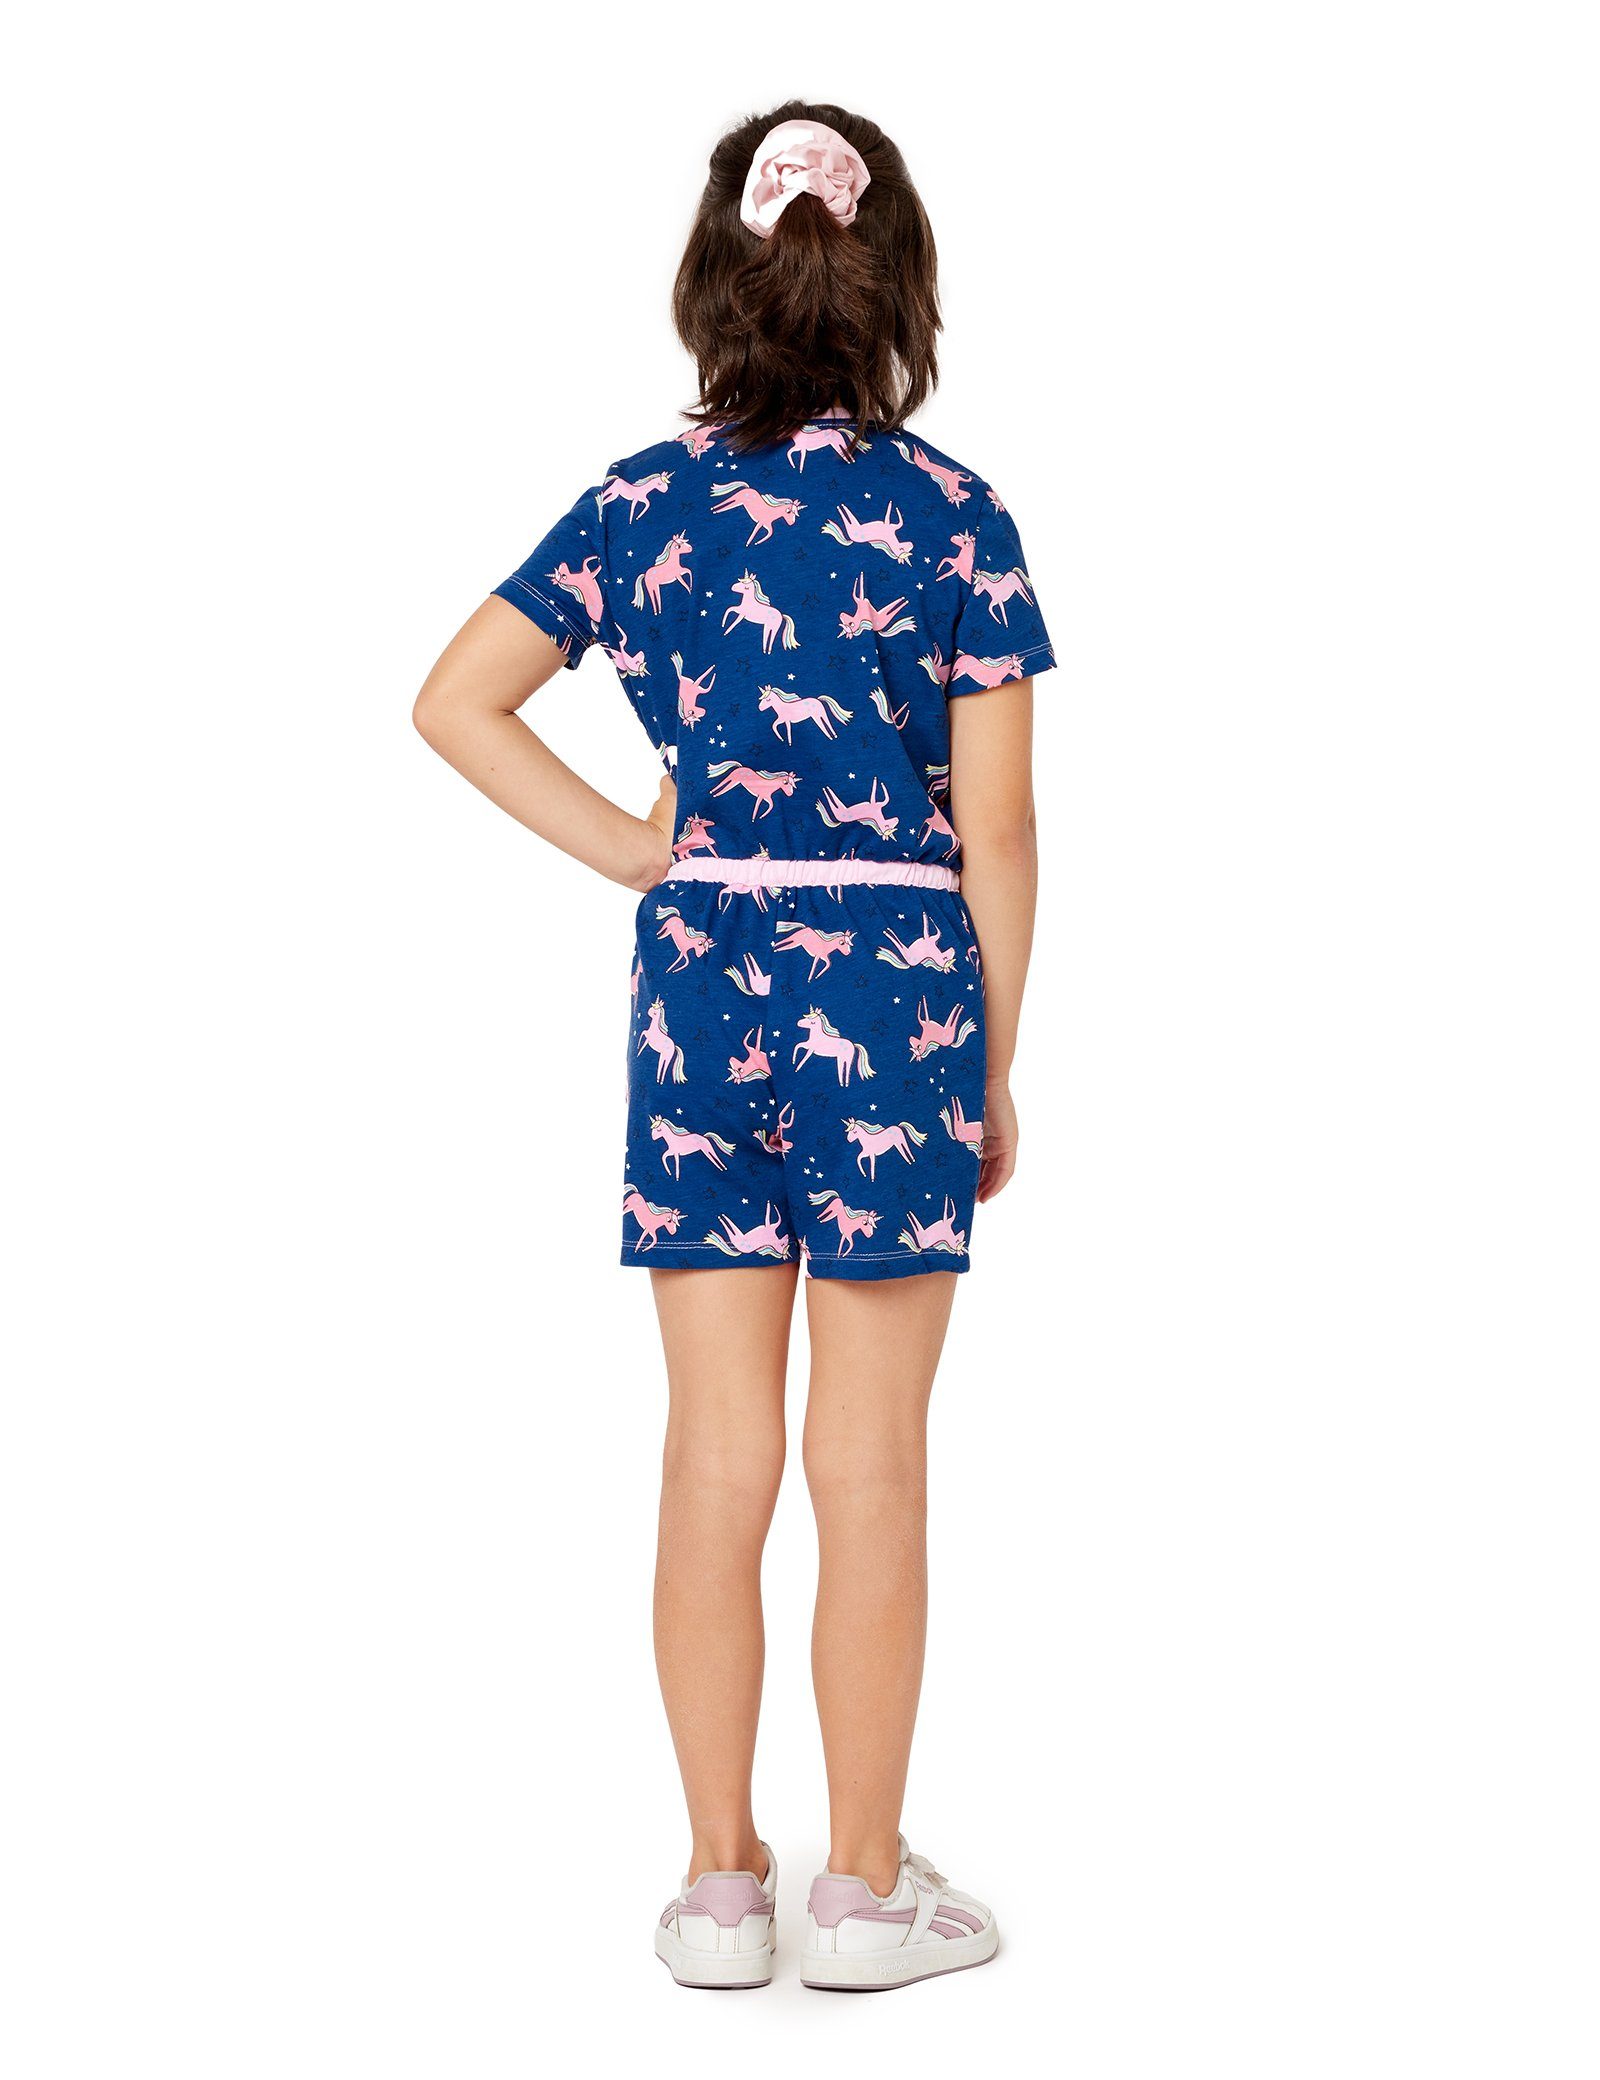 Schlafanzug Marineblau/Einhorn Short Merry Schlafanzug Mädchen Style Overall MS10-267